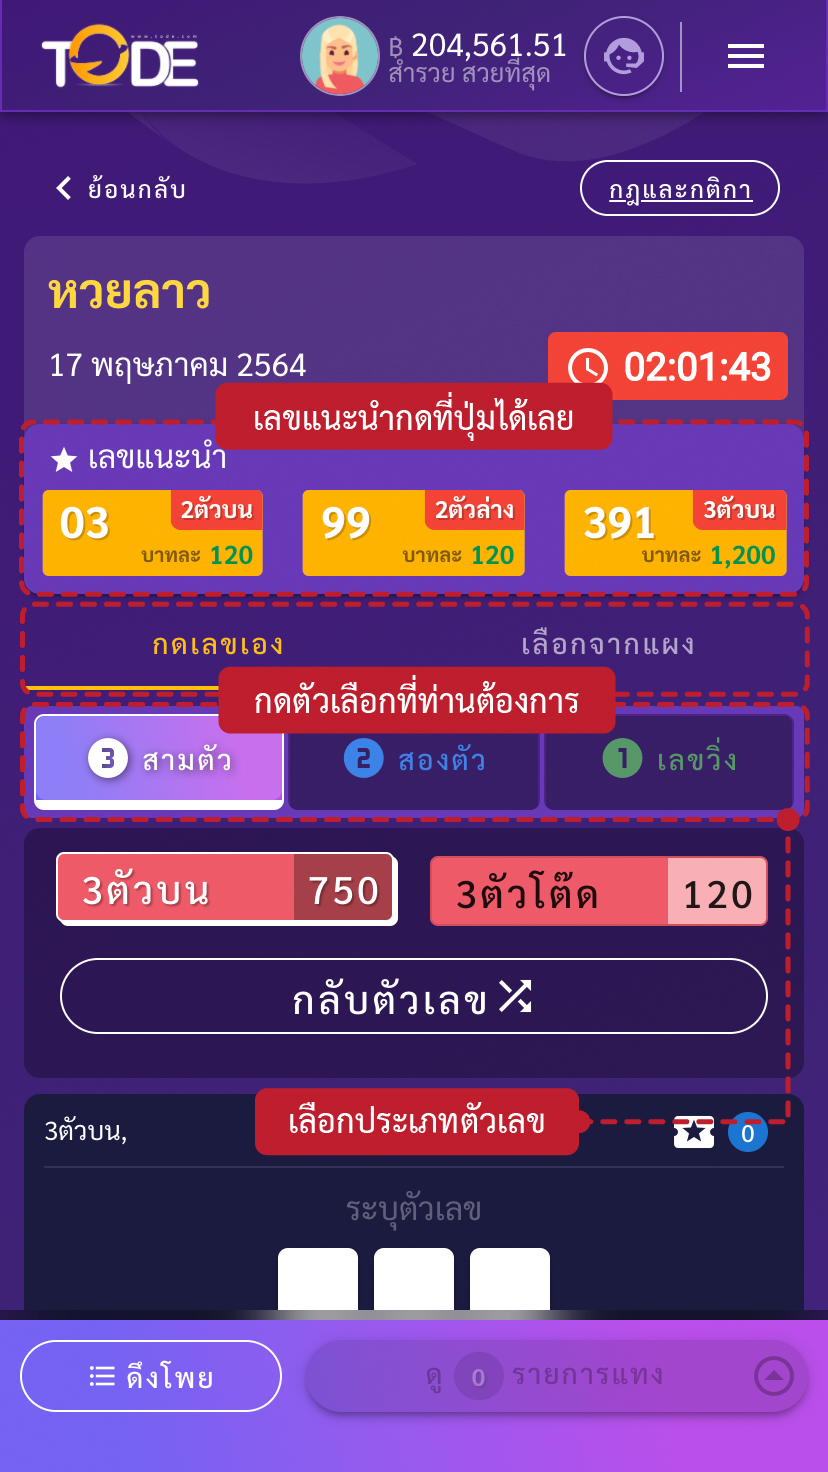 ขั้นตอนวิธีแทงหวยเว็บโต๊ดเว็บแทงหวยอันดับ1ของไทยสูงสุดบาทละ1200